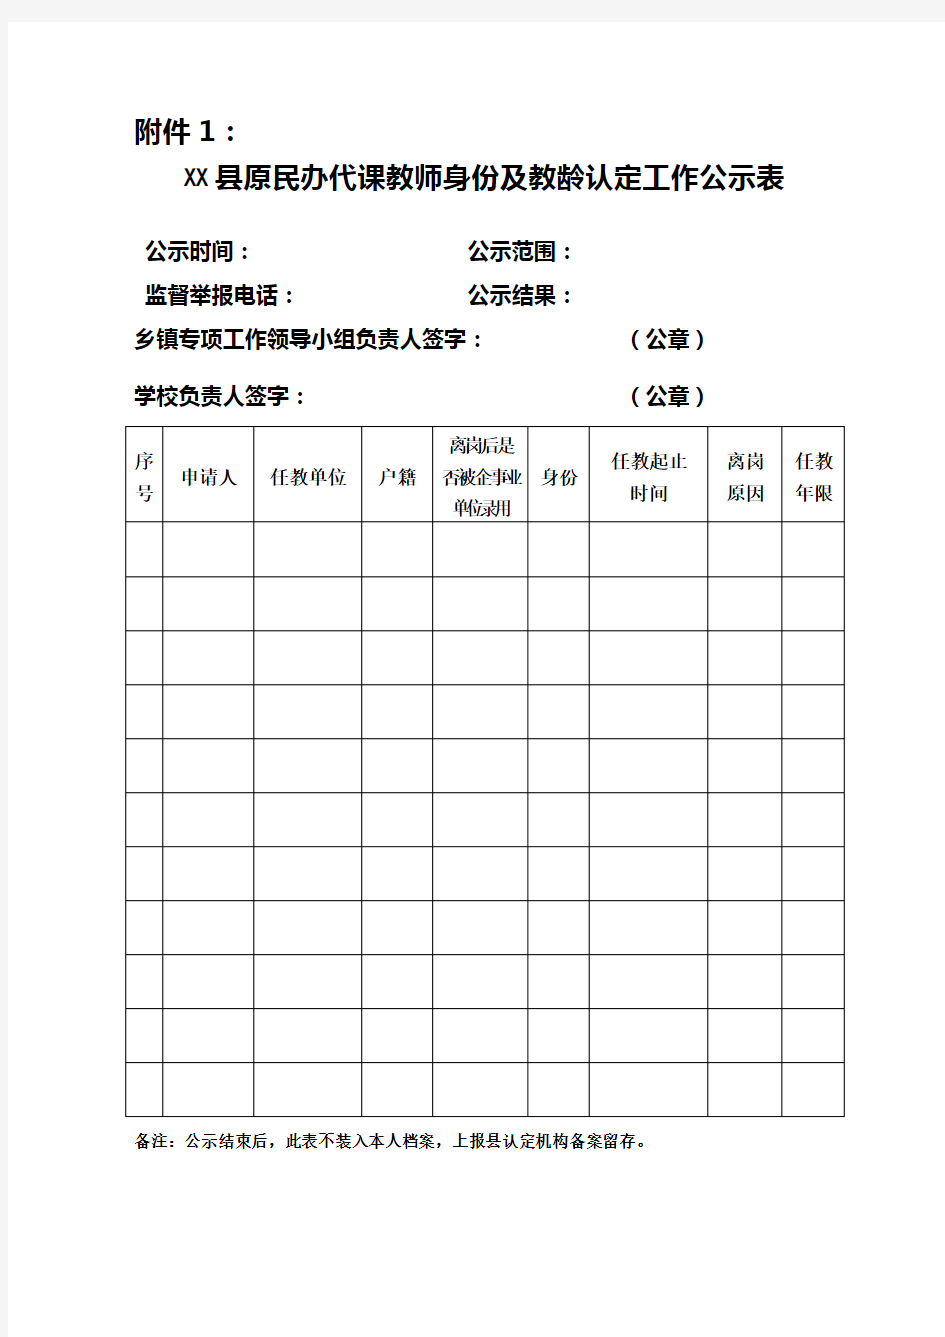 县原民办代课教师身份及教龄认定工作公示表